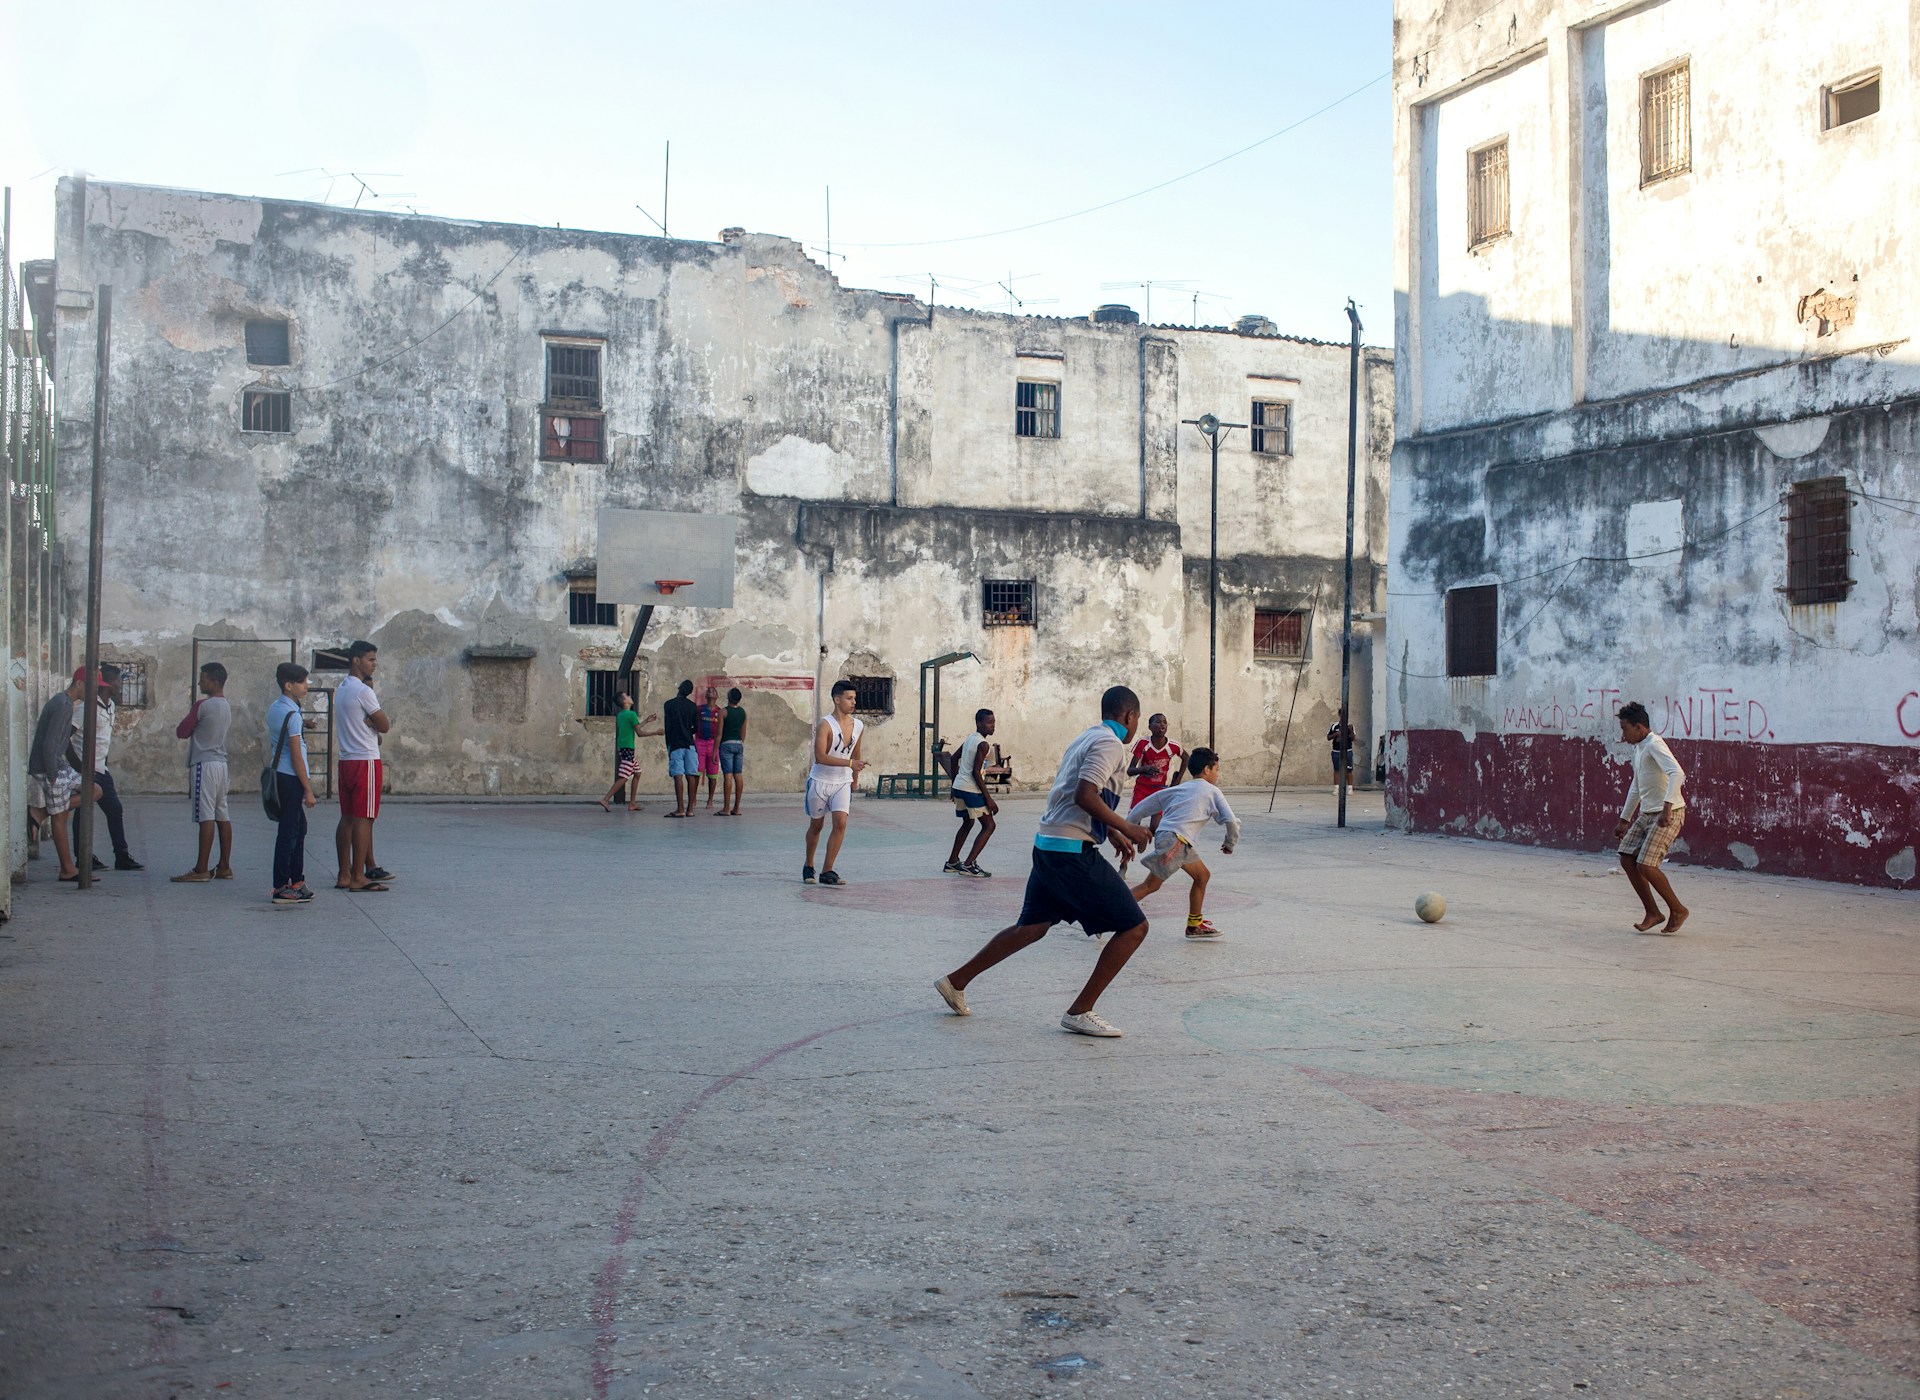 Street soccer in Cuba